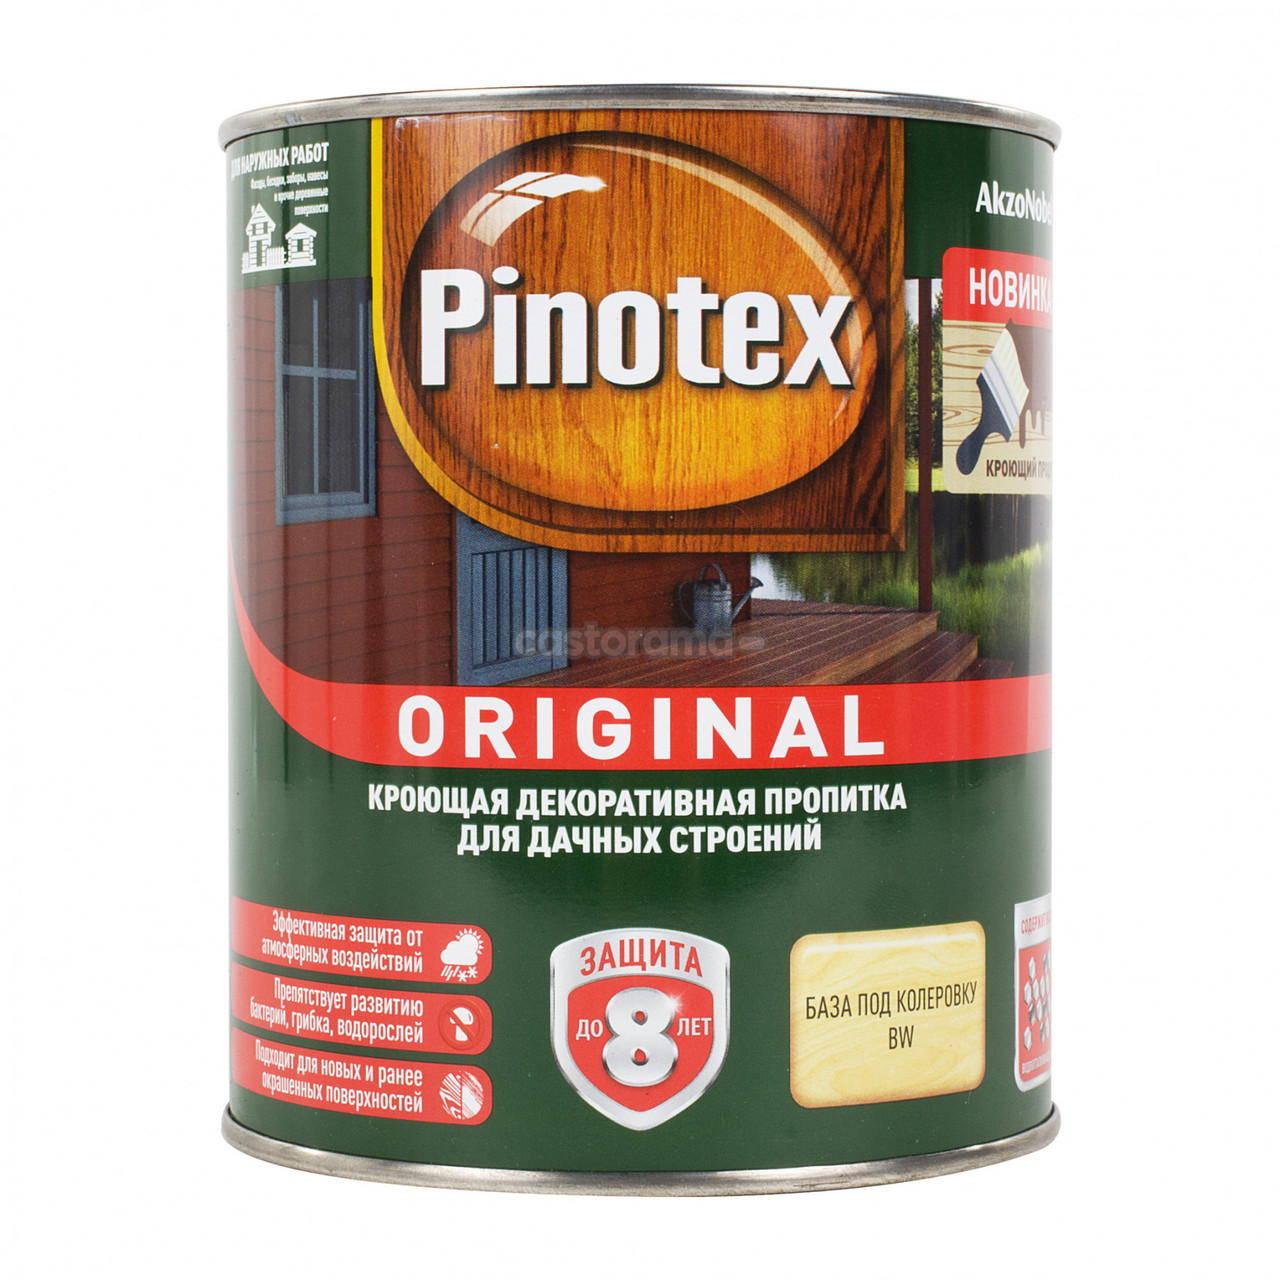 Пропитка Pinotex Original кроющая для деревянных поверхностей CLR, 8.4